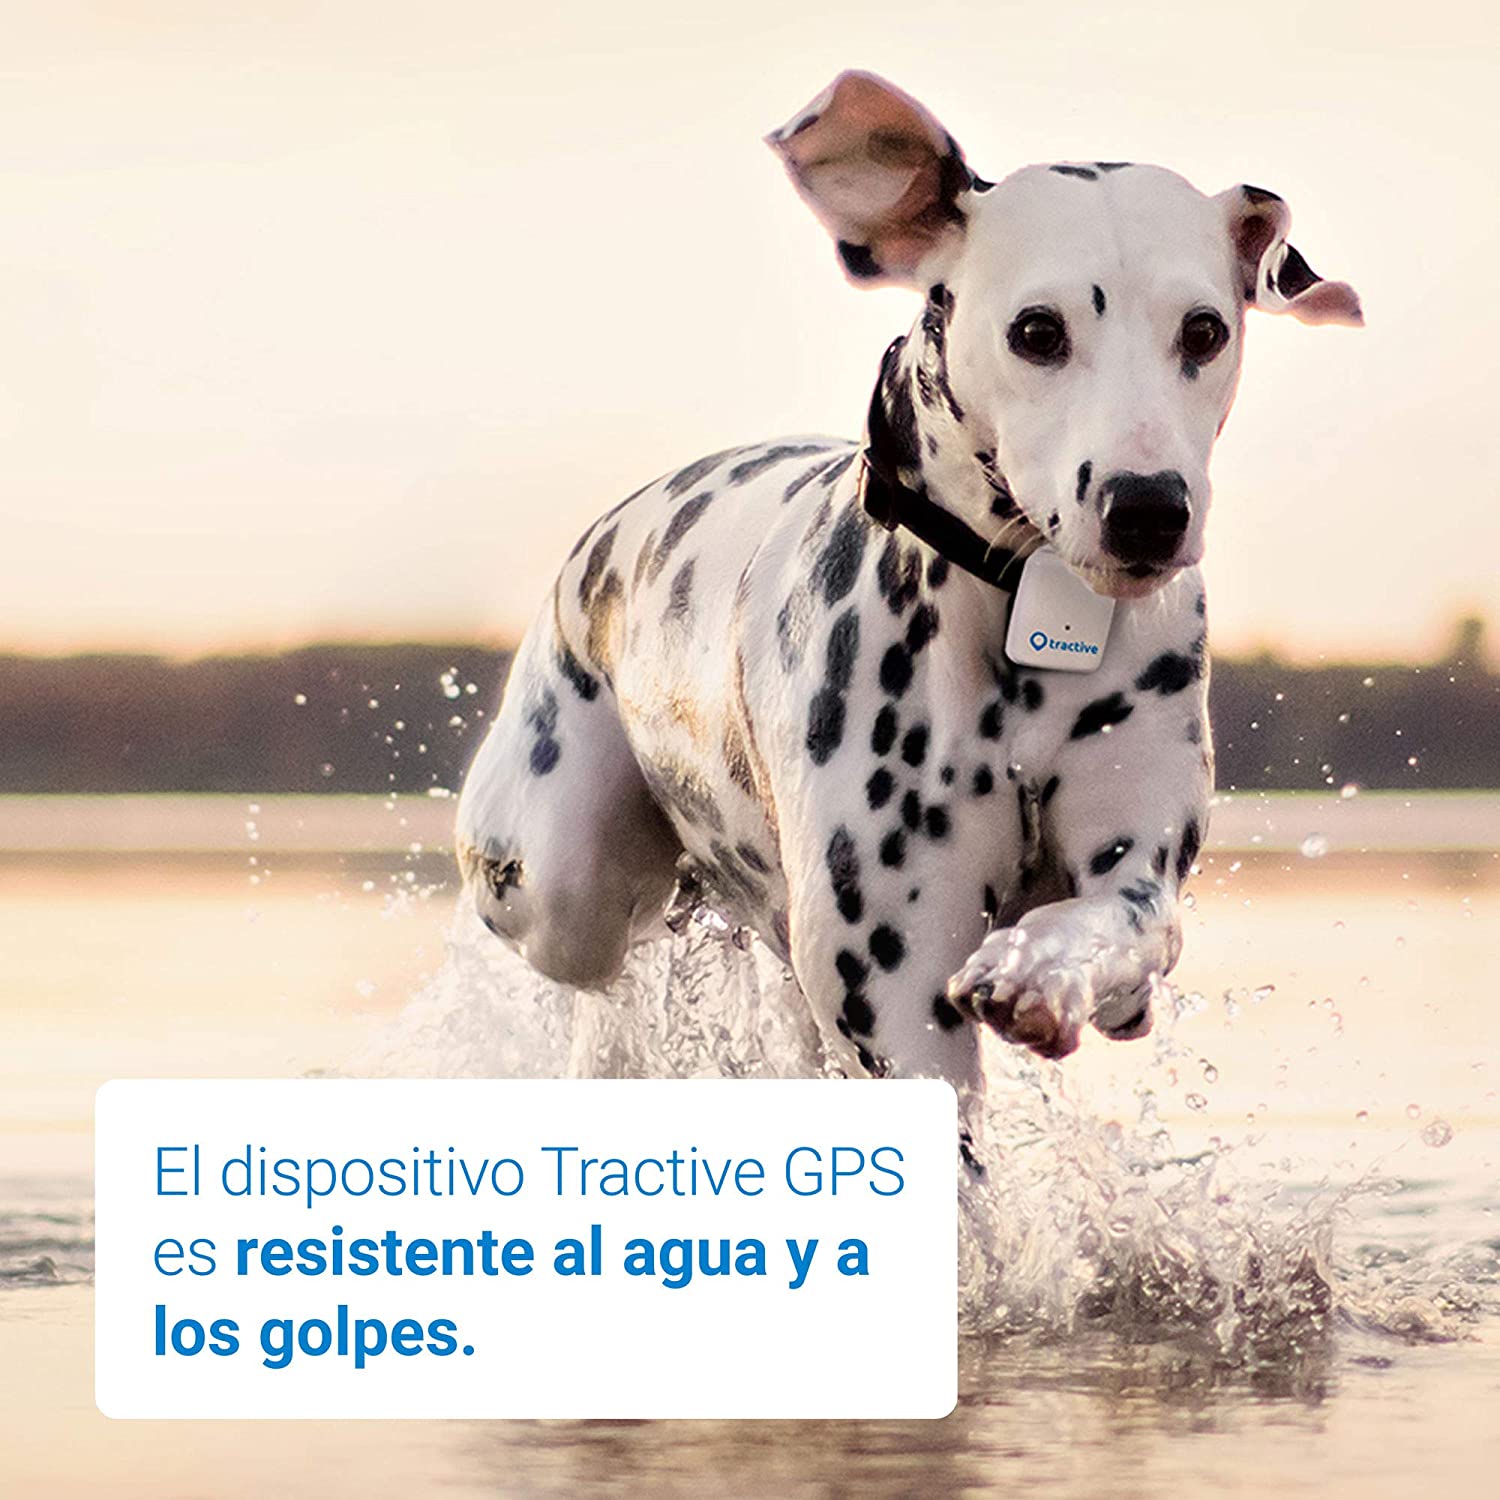  Tractive Localizador GPS para perros - Rastreador con rango ilimitado 